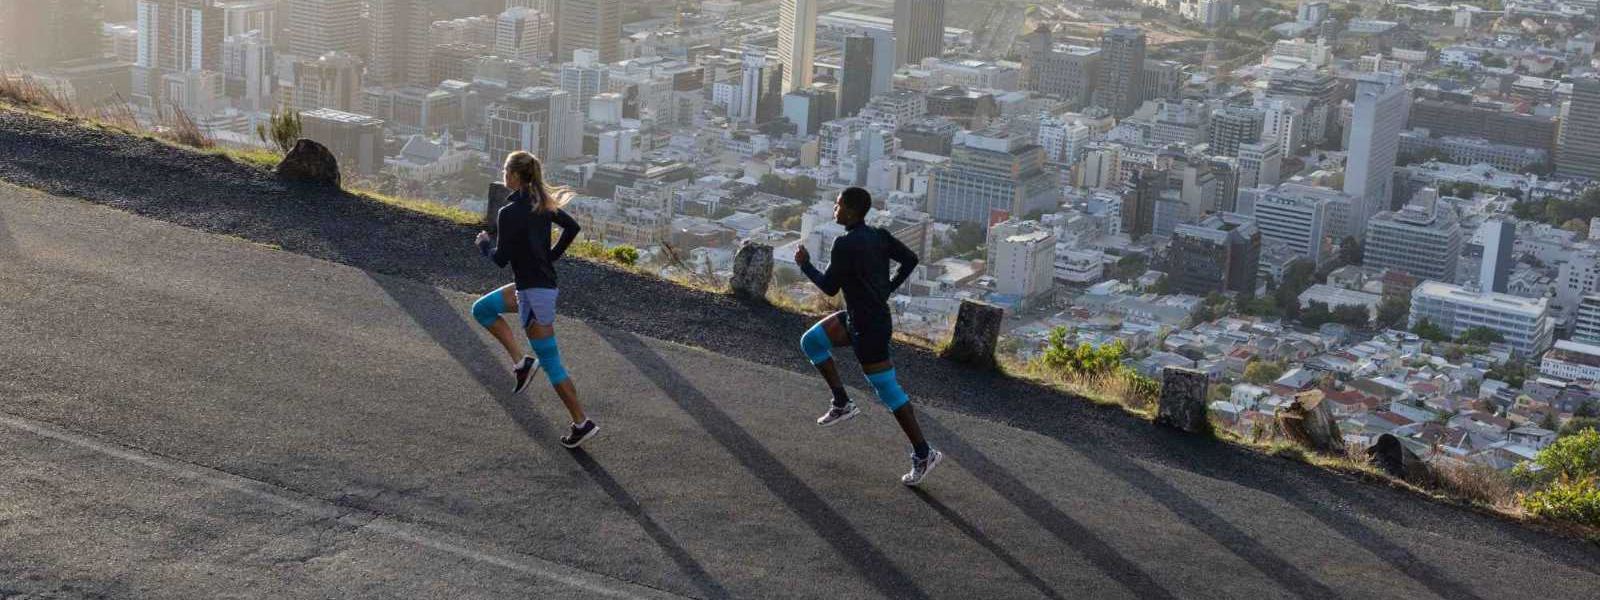 Een vrouw en een man met blauwe kniebars rennen een straat boven een grote stad